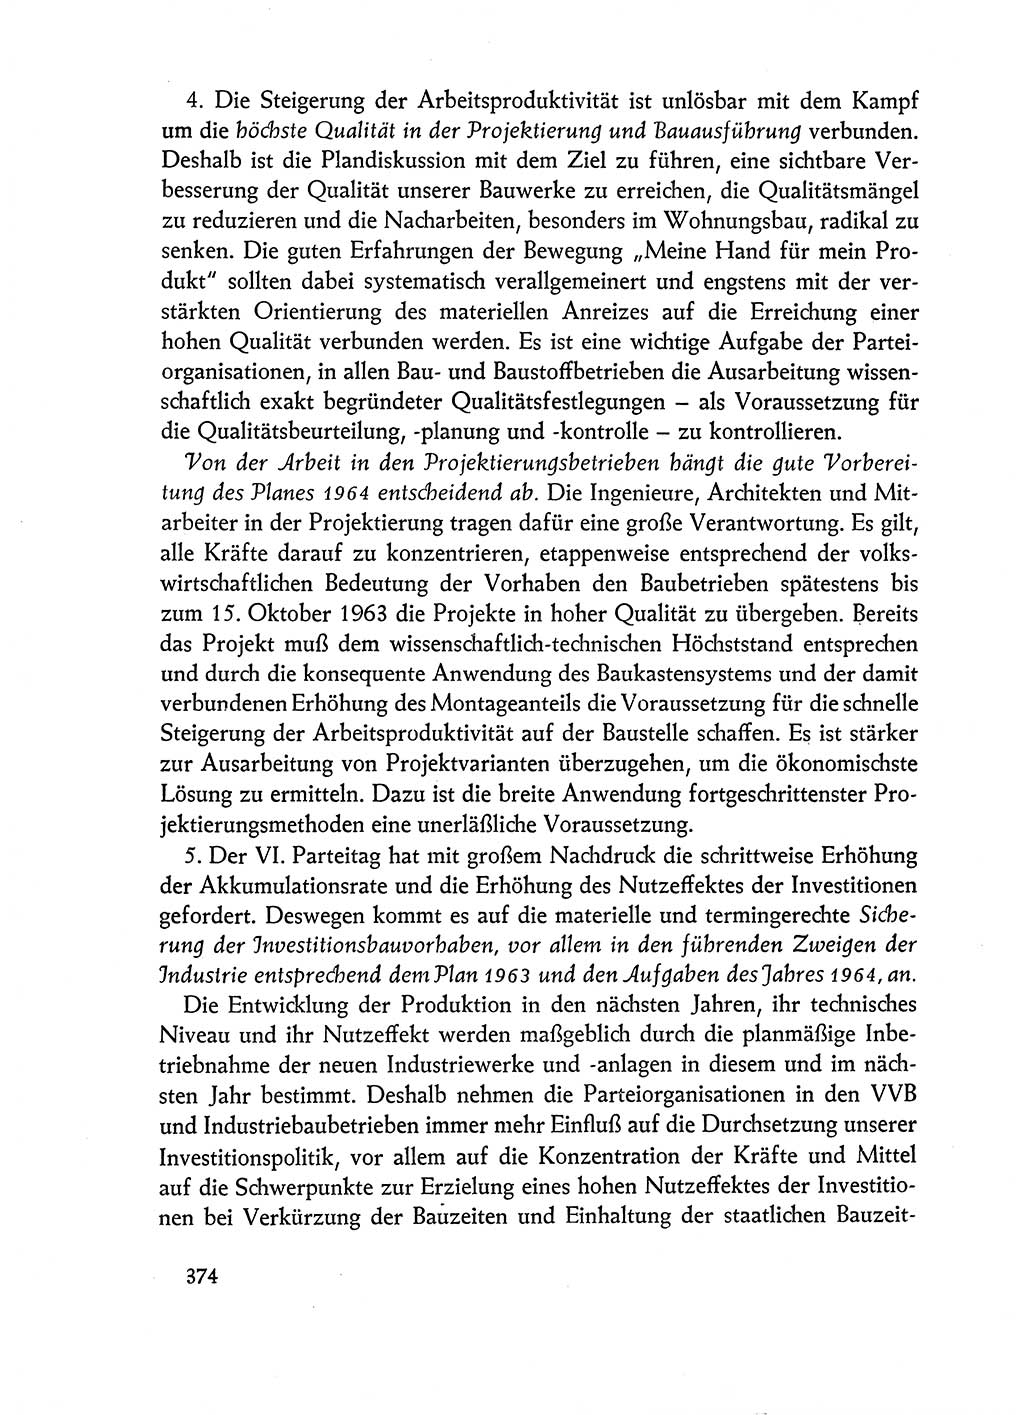 Dokumente der Sozialistischen Einheitspartei Deutschlands (SED) [Deutsche Demokratische Republik (DDR)] 1962-1963, Seite 374 (Dok. SED DDR 1962-1963, S. 374)